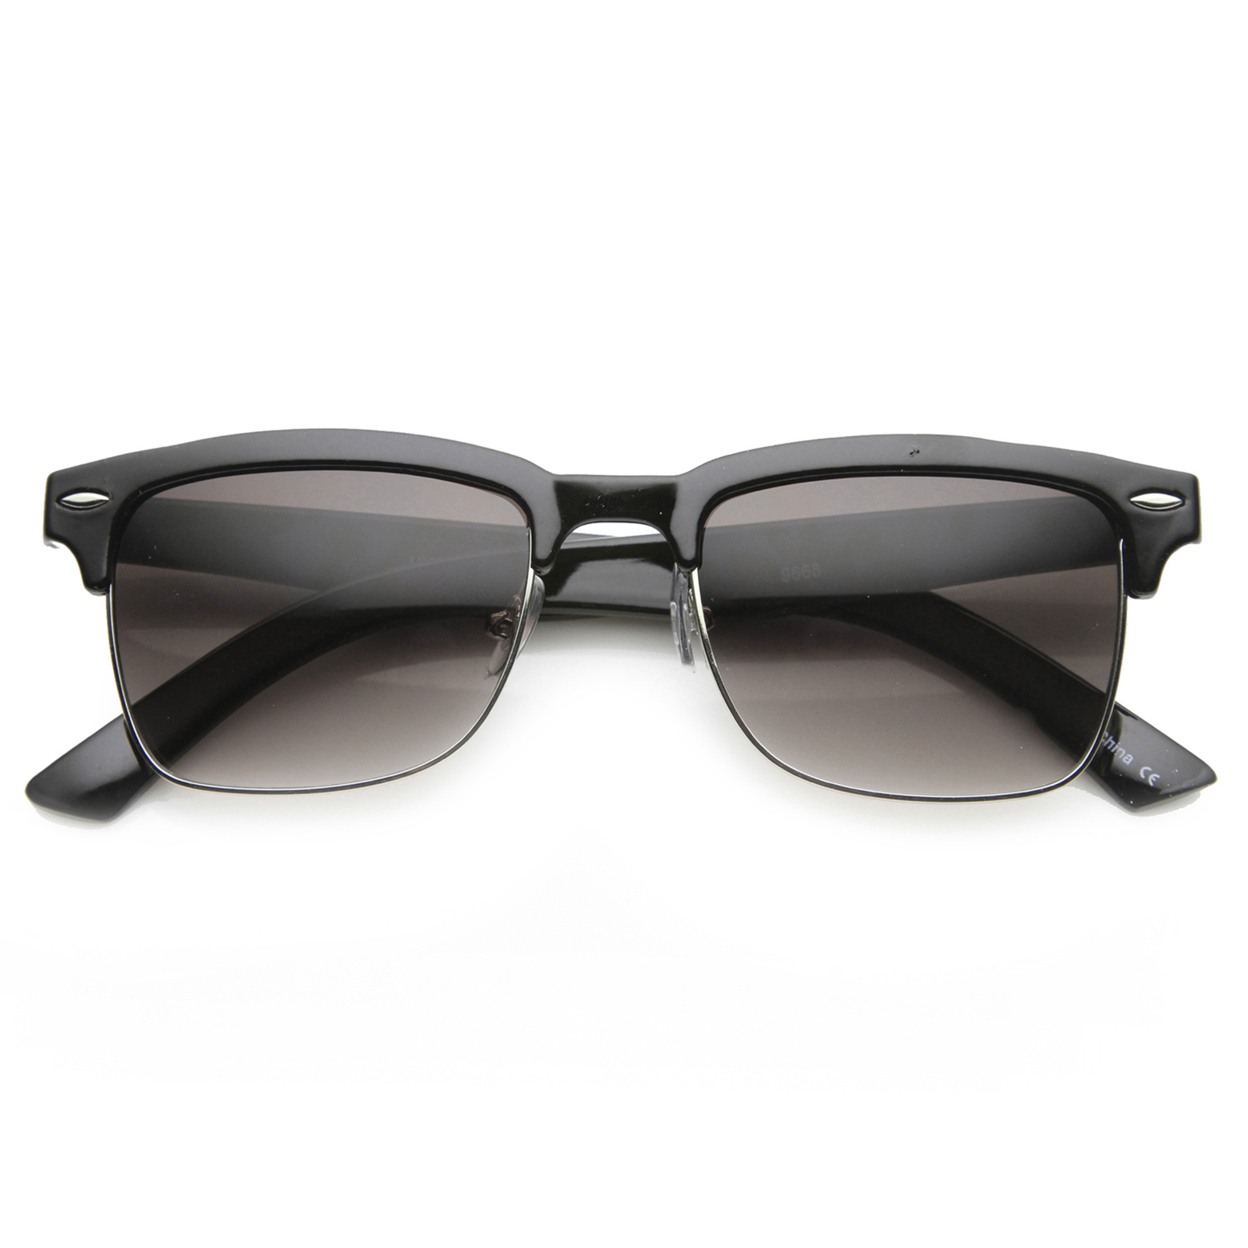 Classic Dapper Rectangular Half-Frame Horn Rimmed Sunglasses 9809 - Shiny Tortoise-Gold / Brown